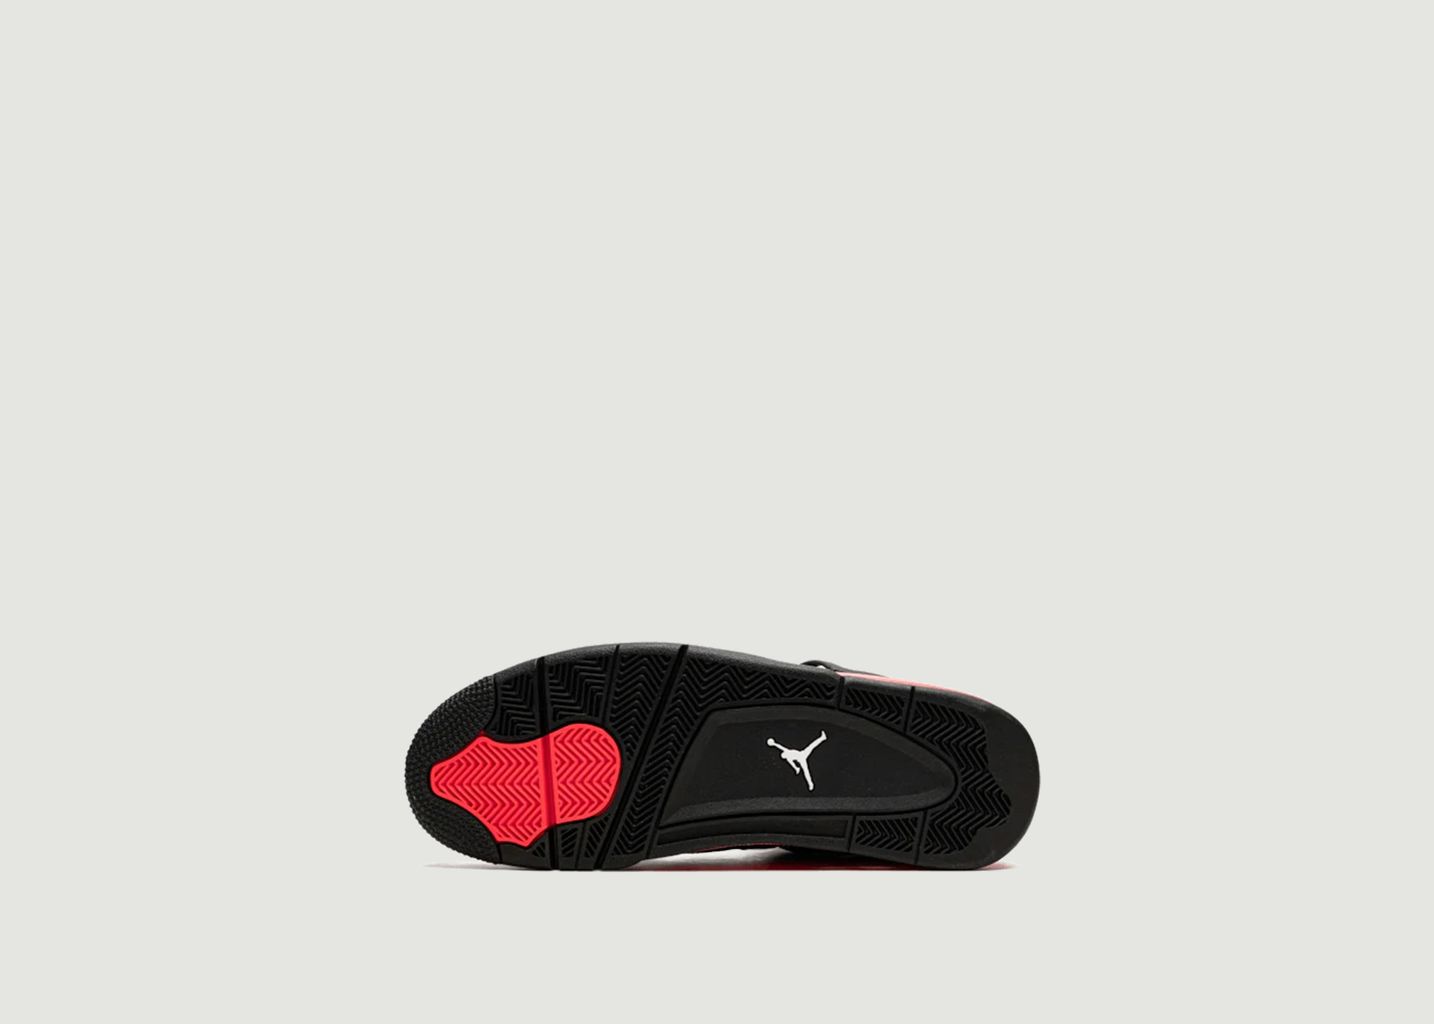 Sneakers Air Jordan 4 Retro Red Thunder (GS) - Nike